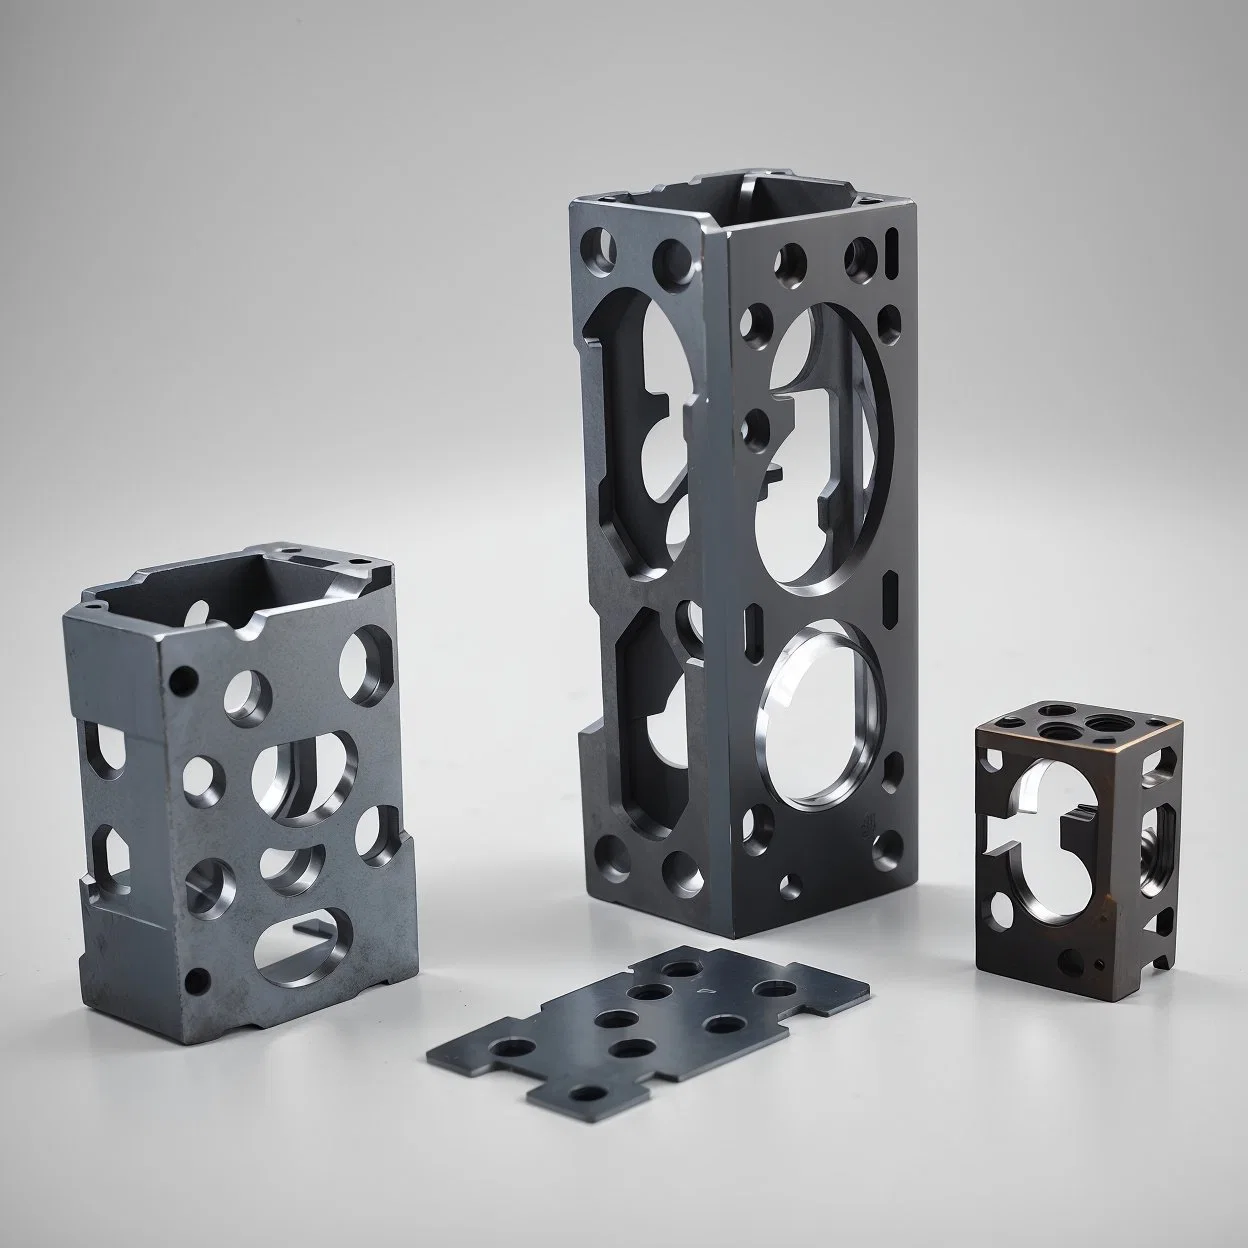 CNC Hersteller Fabrik-Komponente Metall Teile Aluminium Edelstahl Kupfer Messing Fräsen Bohren Fräsen Turnin CNC-Service Bearbeitungsteile